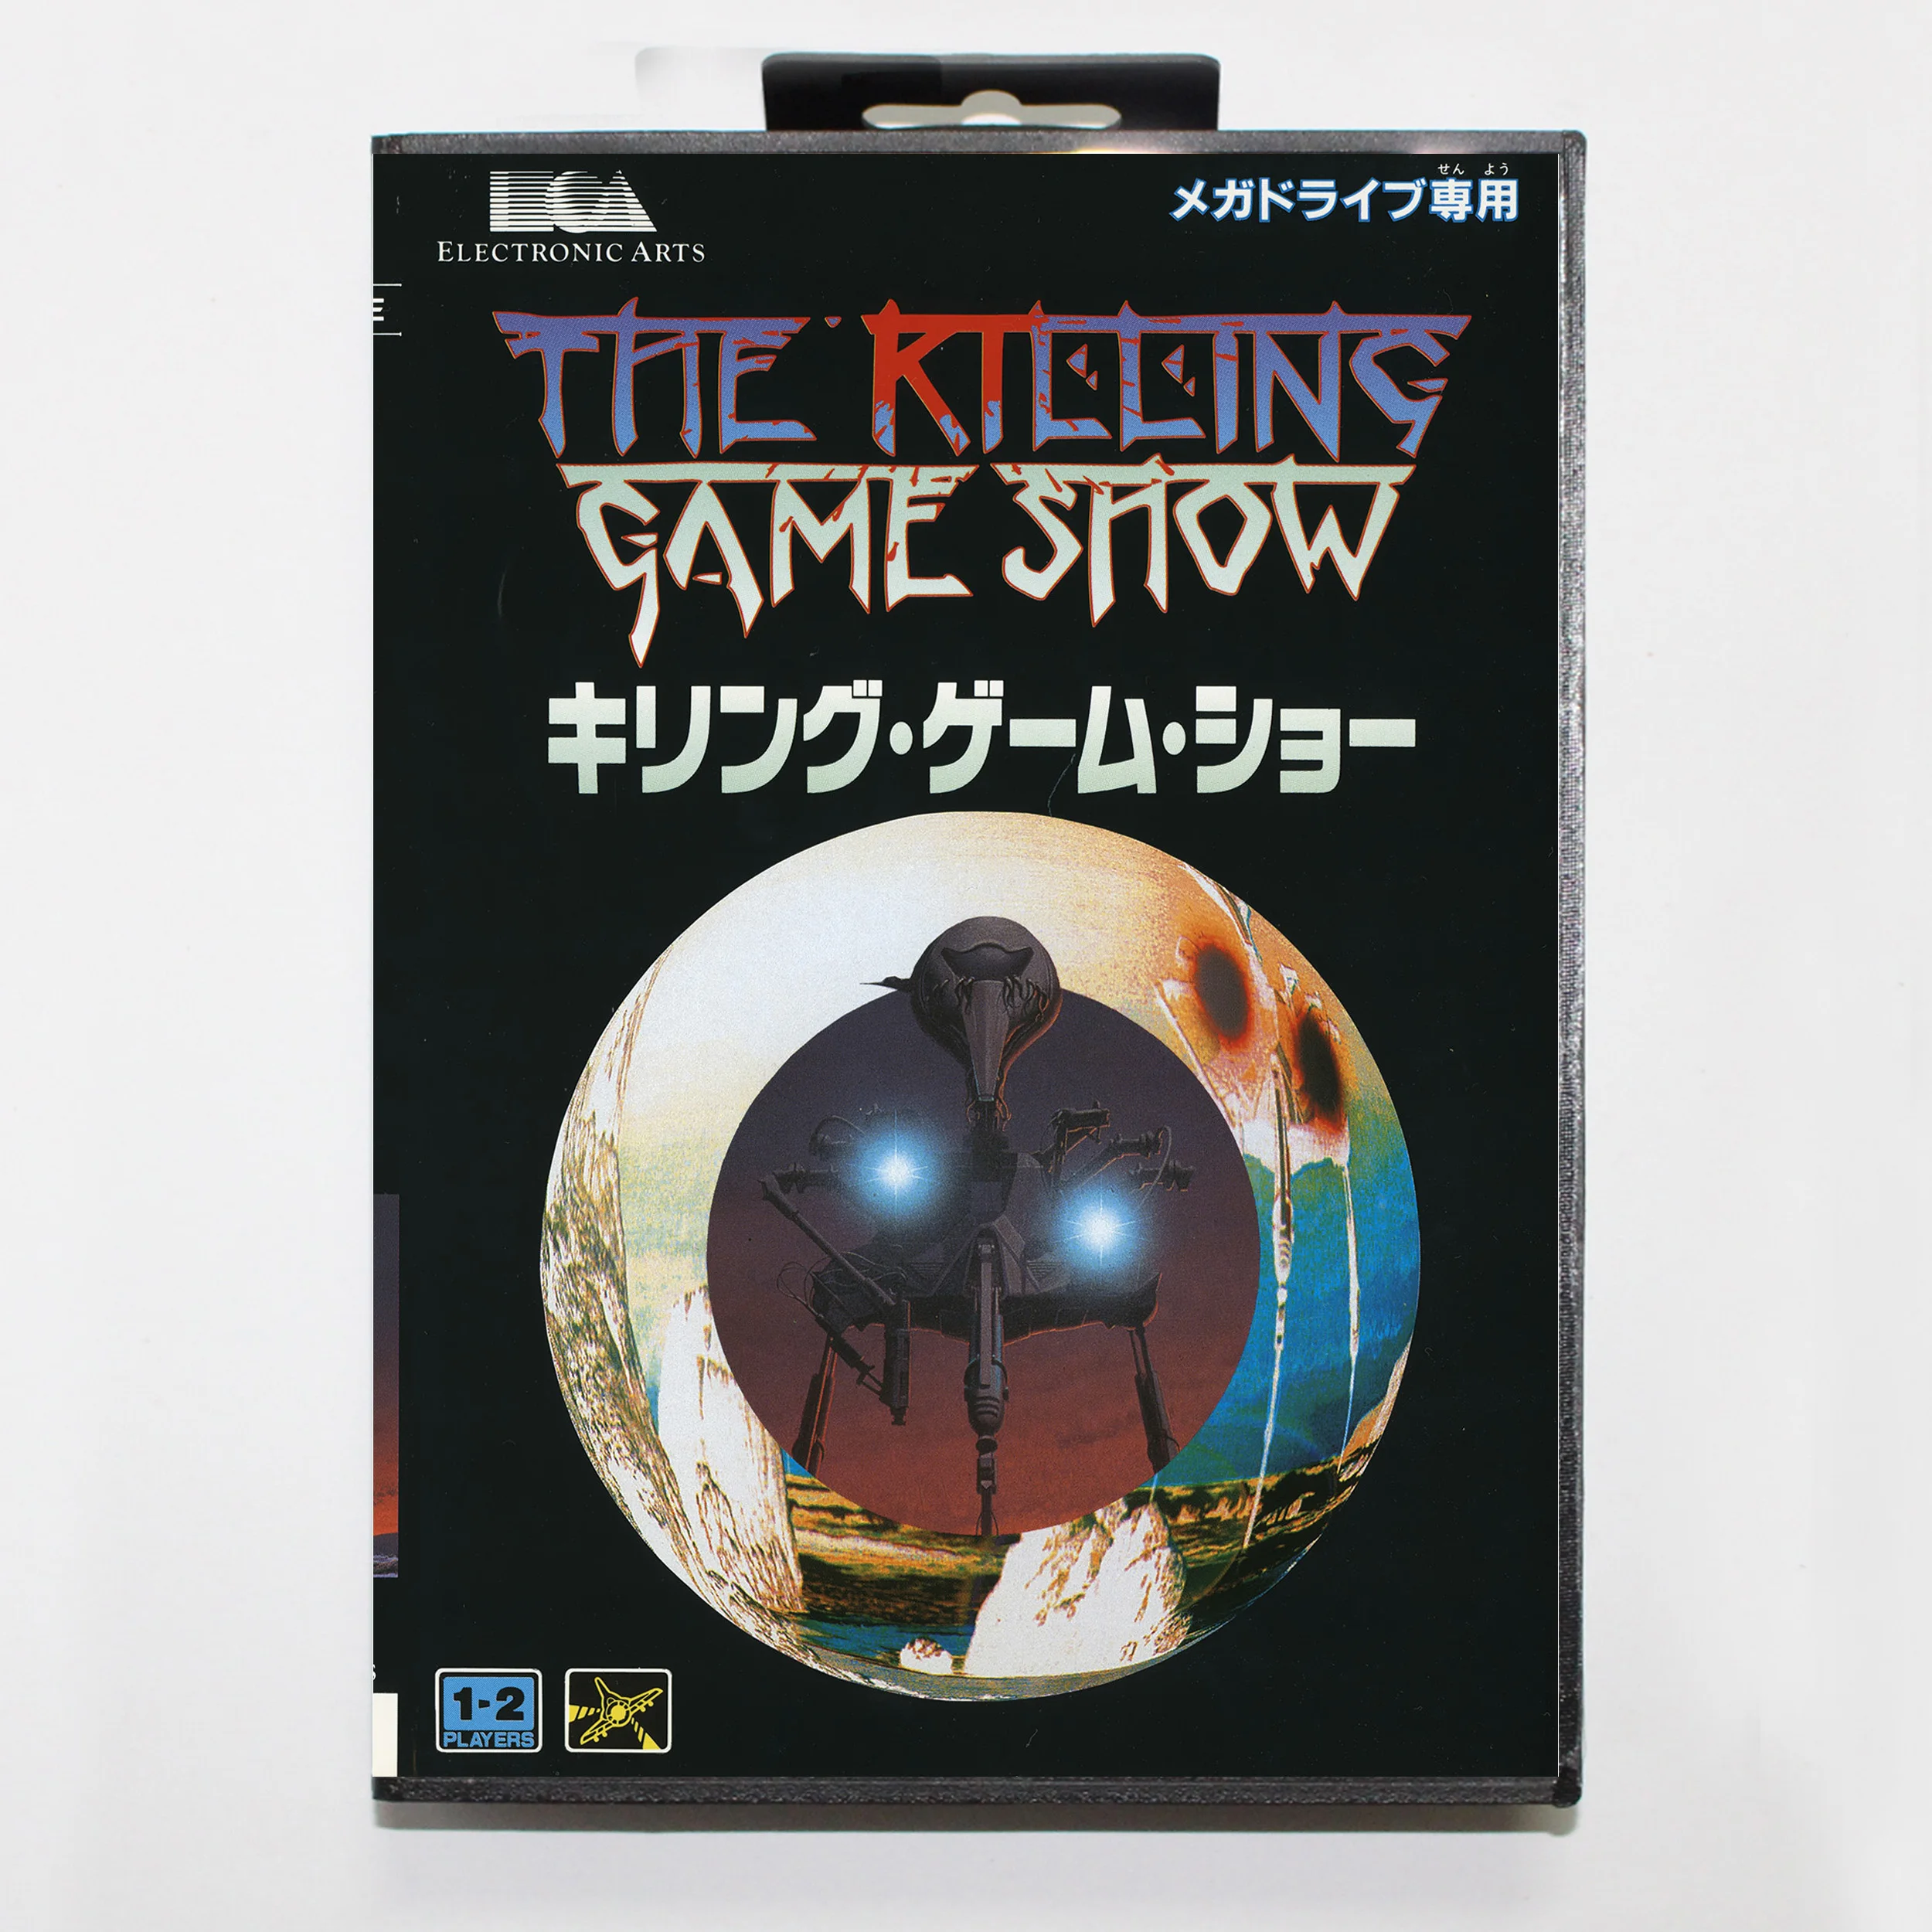 

Игра «показ смерти» известная как Фатальная перемотка 16-битная игровая карта MD для Sega Mega Drive/ Genesis с крышкой JP Розничная коробка